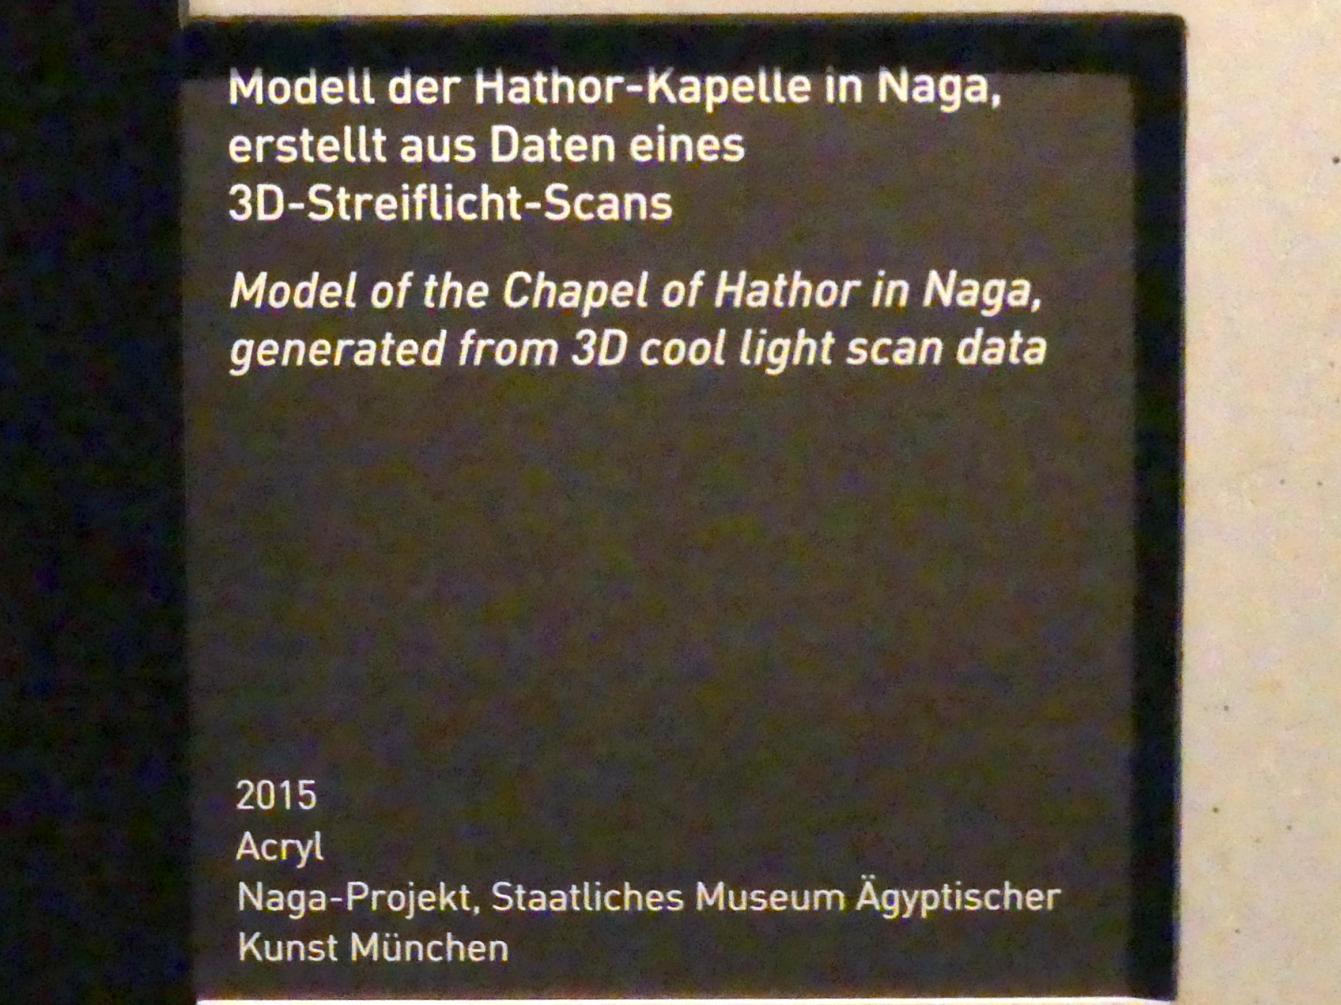 Modell der Hathor-Kapelle Naga, erstellt aus Daten eines 3D-Streiflicht-Scans, 2015, Bild 3/3